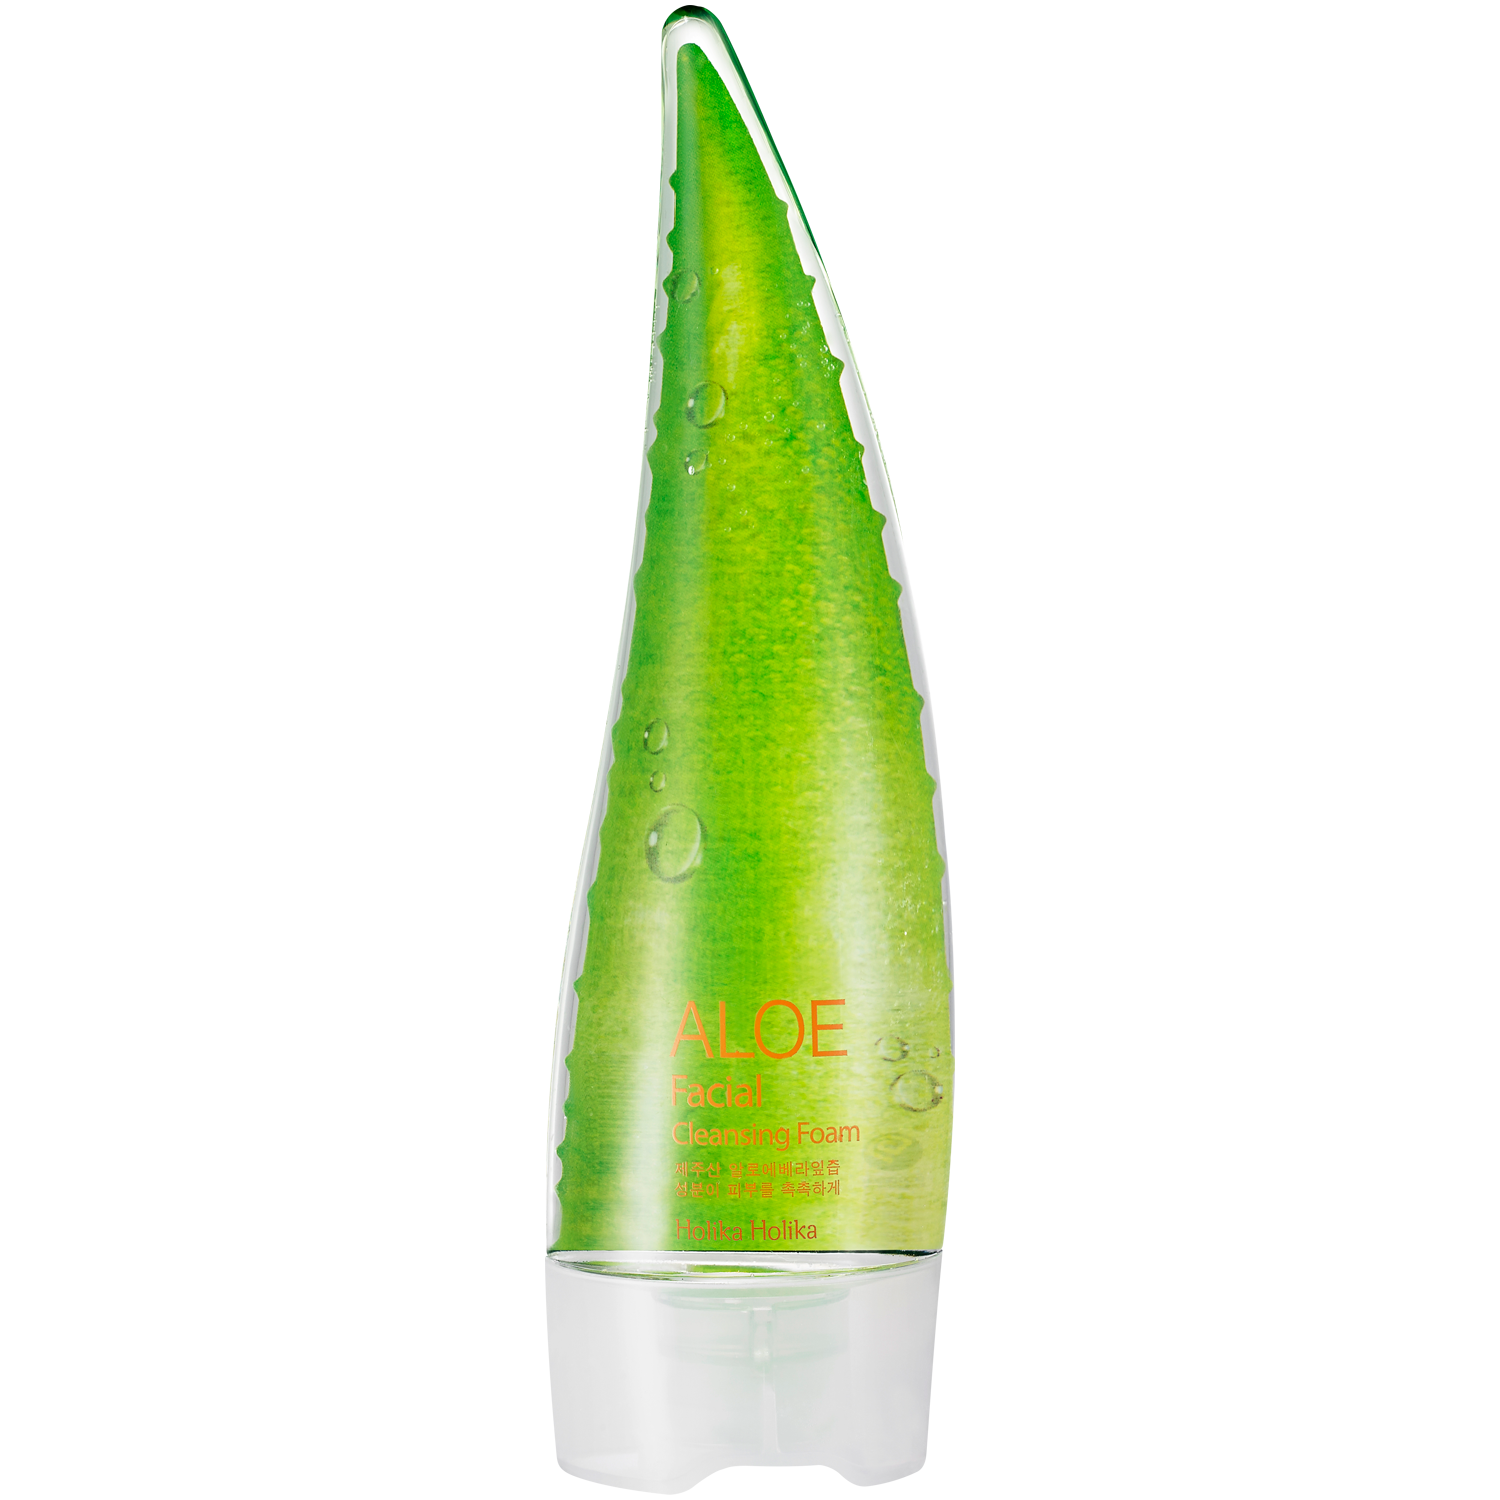 Holika Holika Aloe очищающая пенка для лица, 150 мл очищающая пенка для лица aloe 150 мл